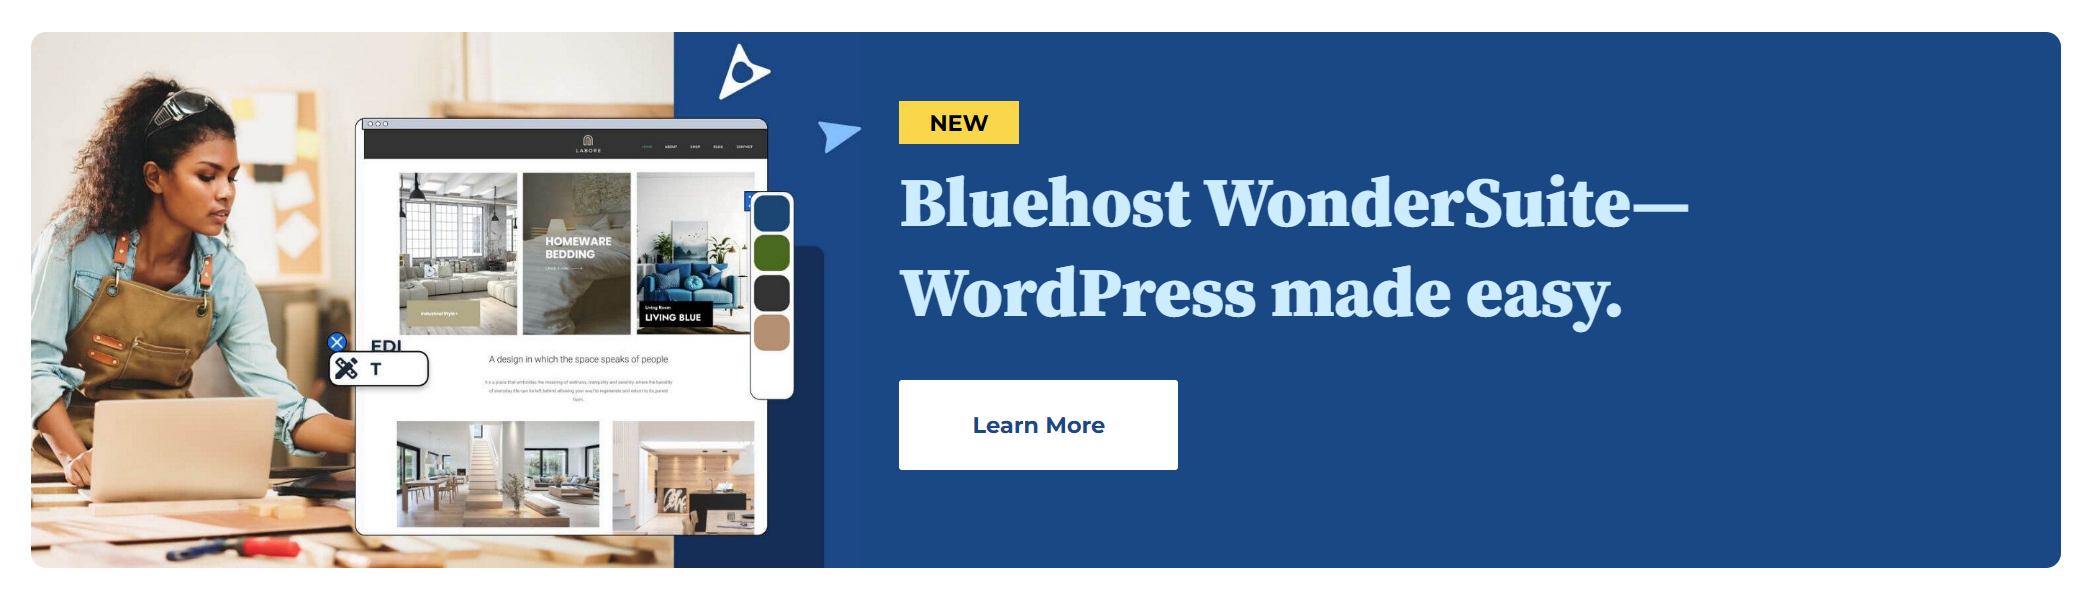 BlueHost wonderSuite